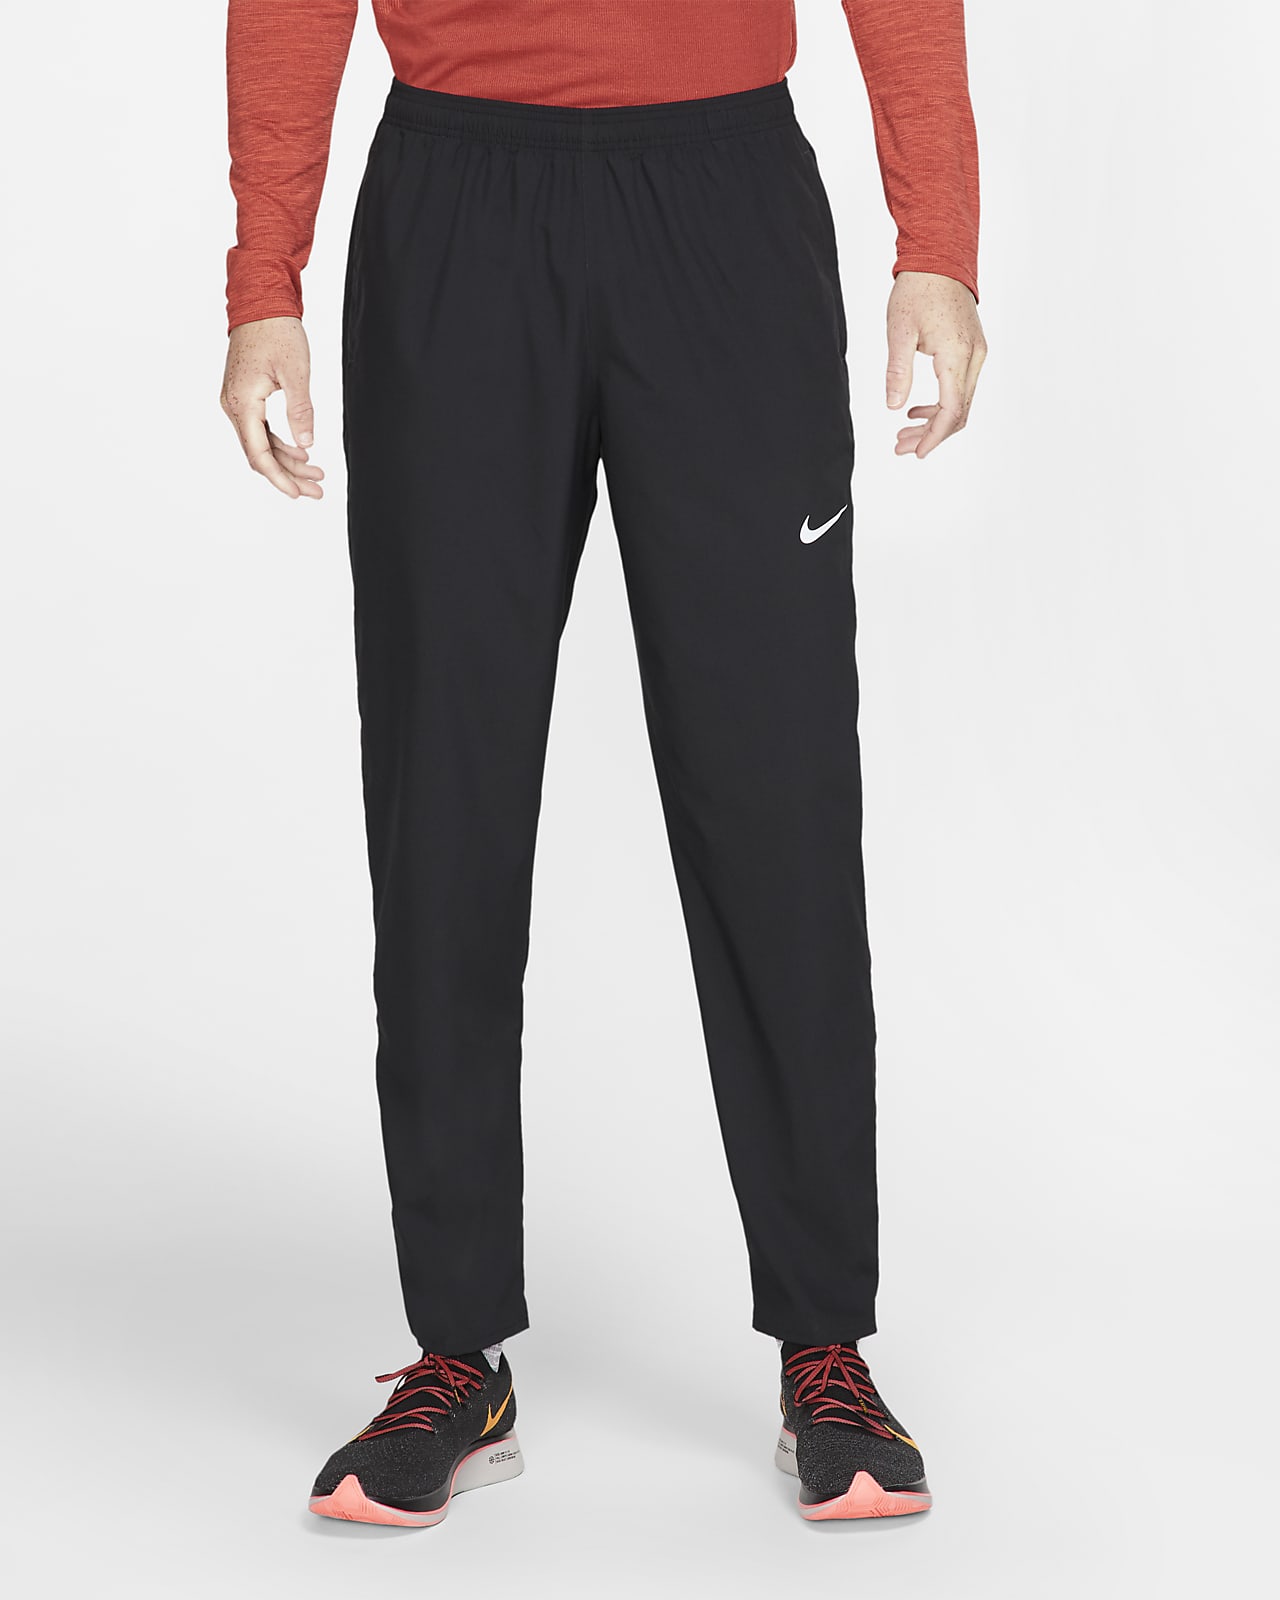 Pantalones tejidos de running para hombre Nike. Nike.com